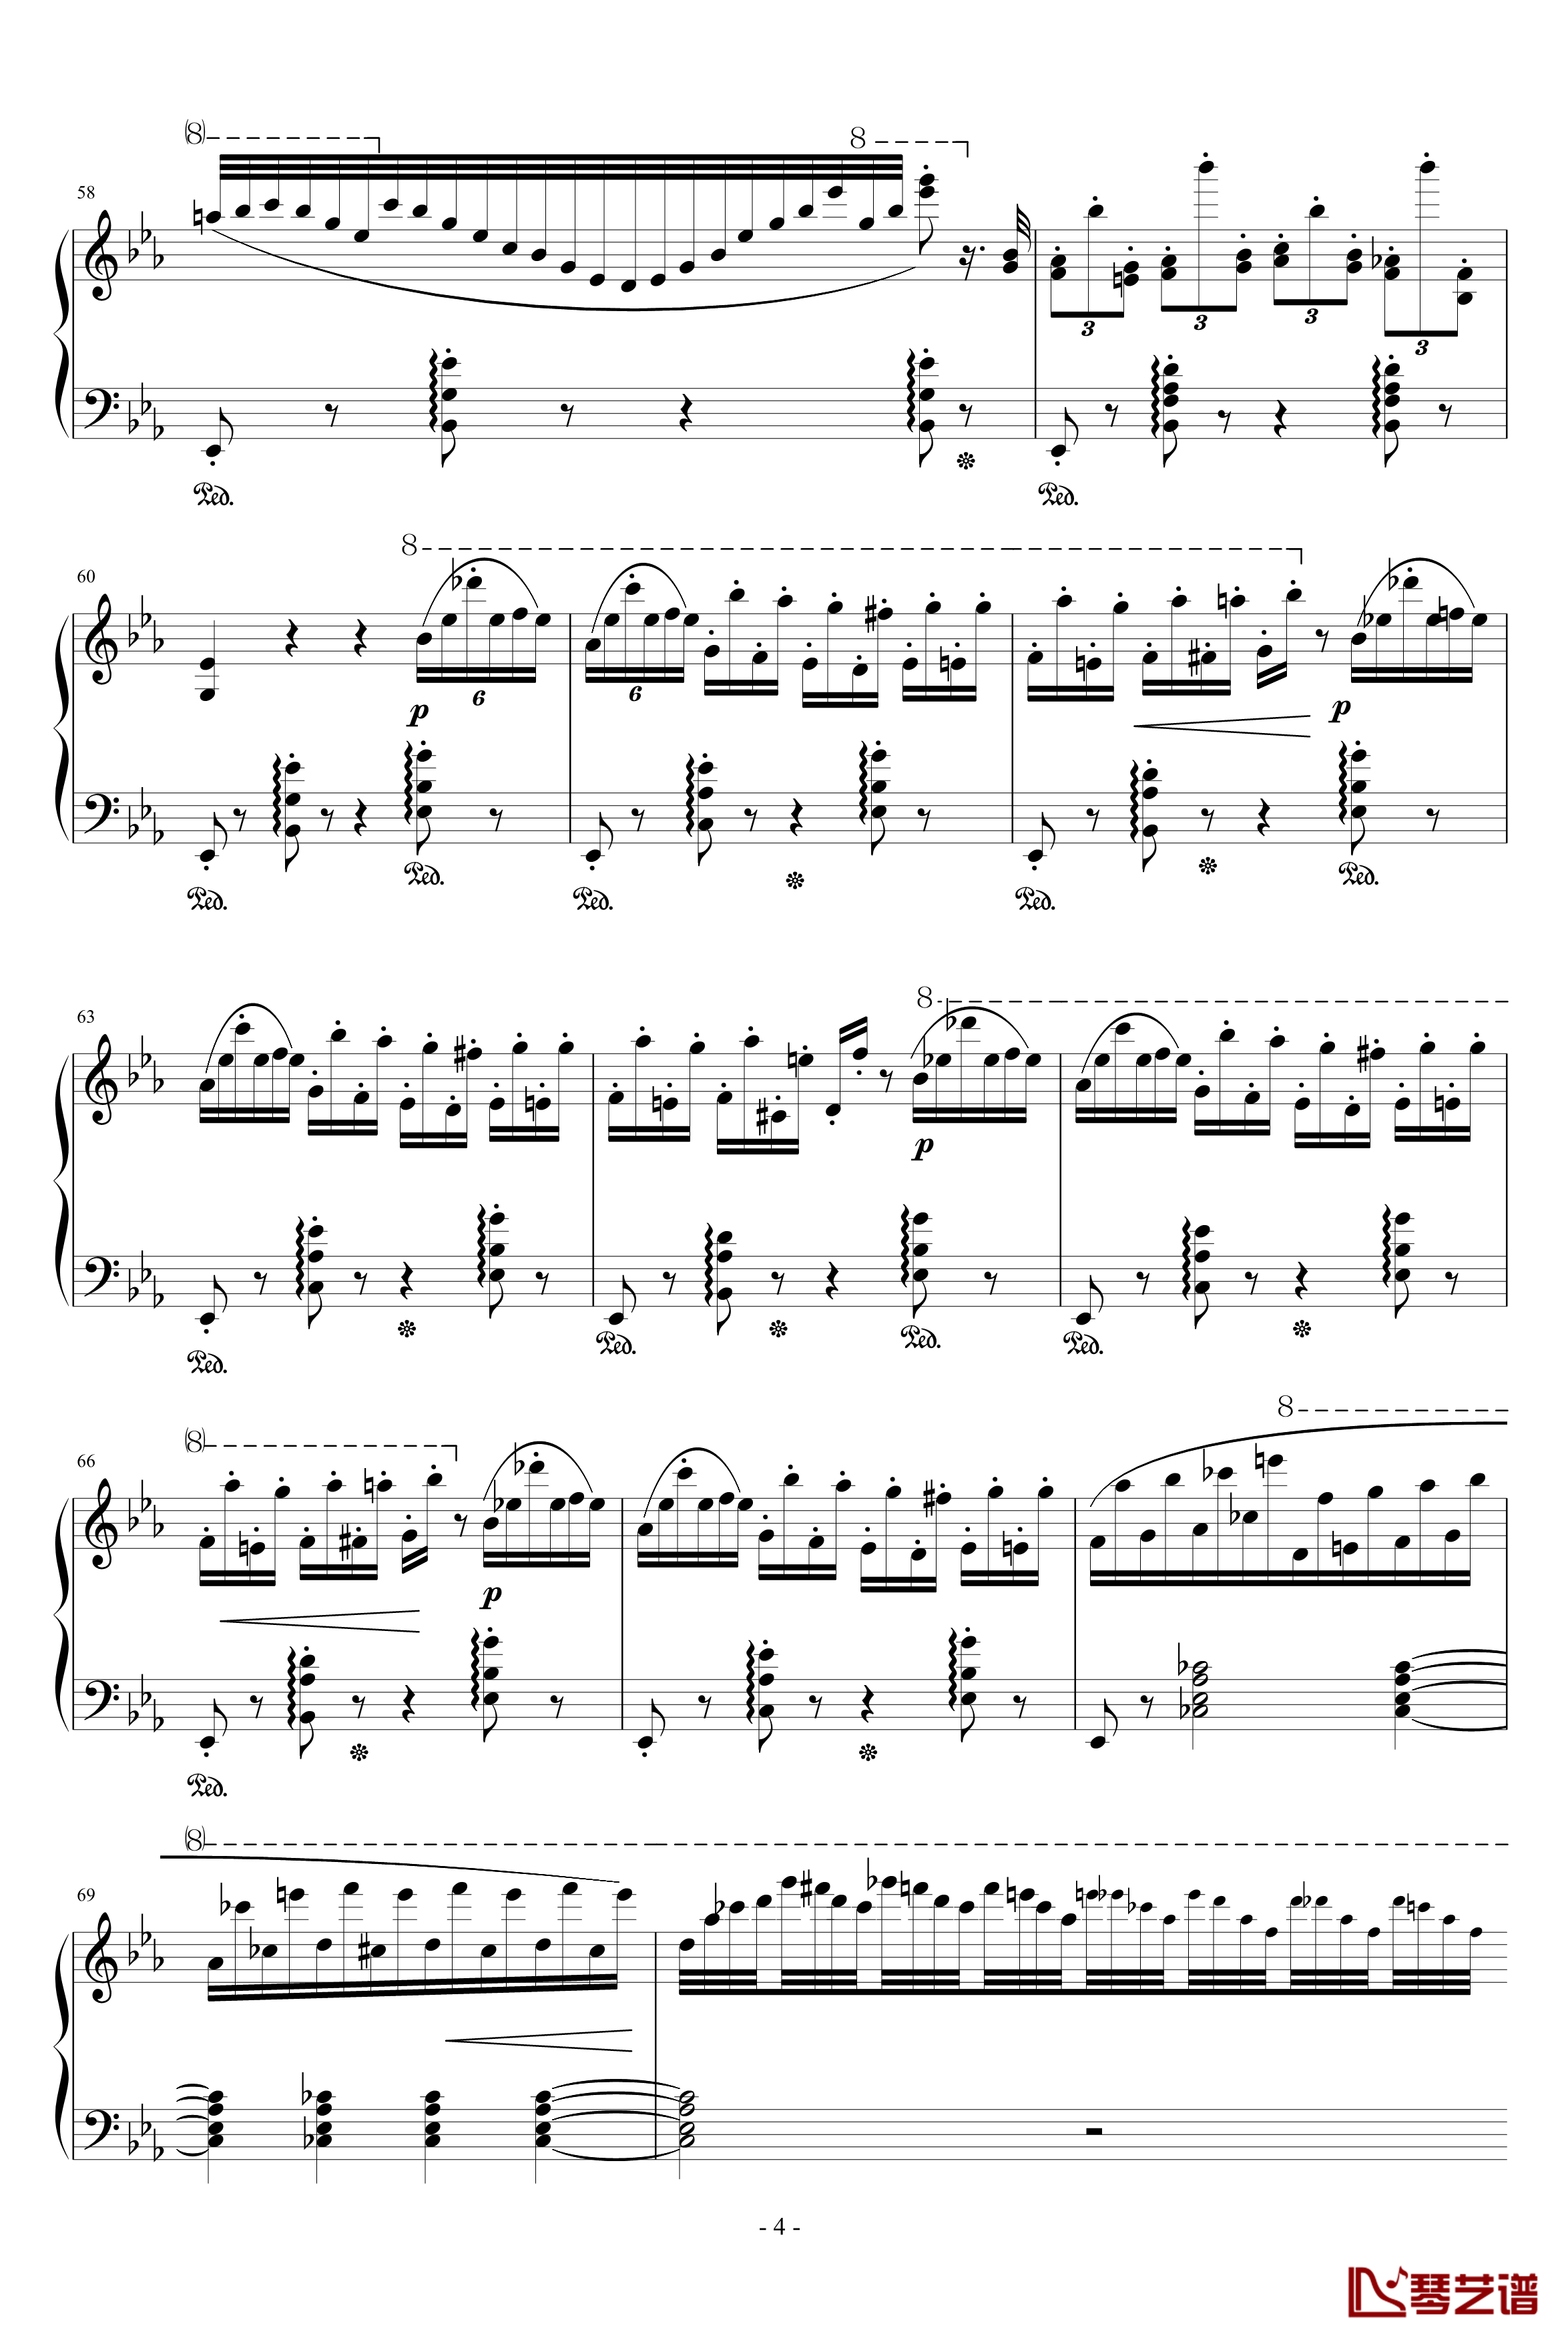 匈牙利狂想曲第9号钢琴谱-19首匈狂里篇幅最浩大、技巧最艰深的作品之一-李斯特4